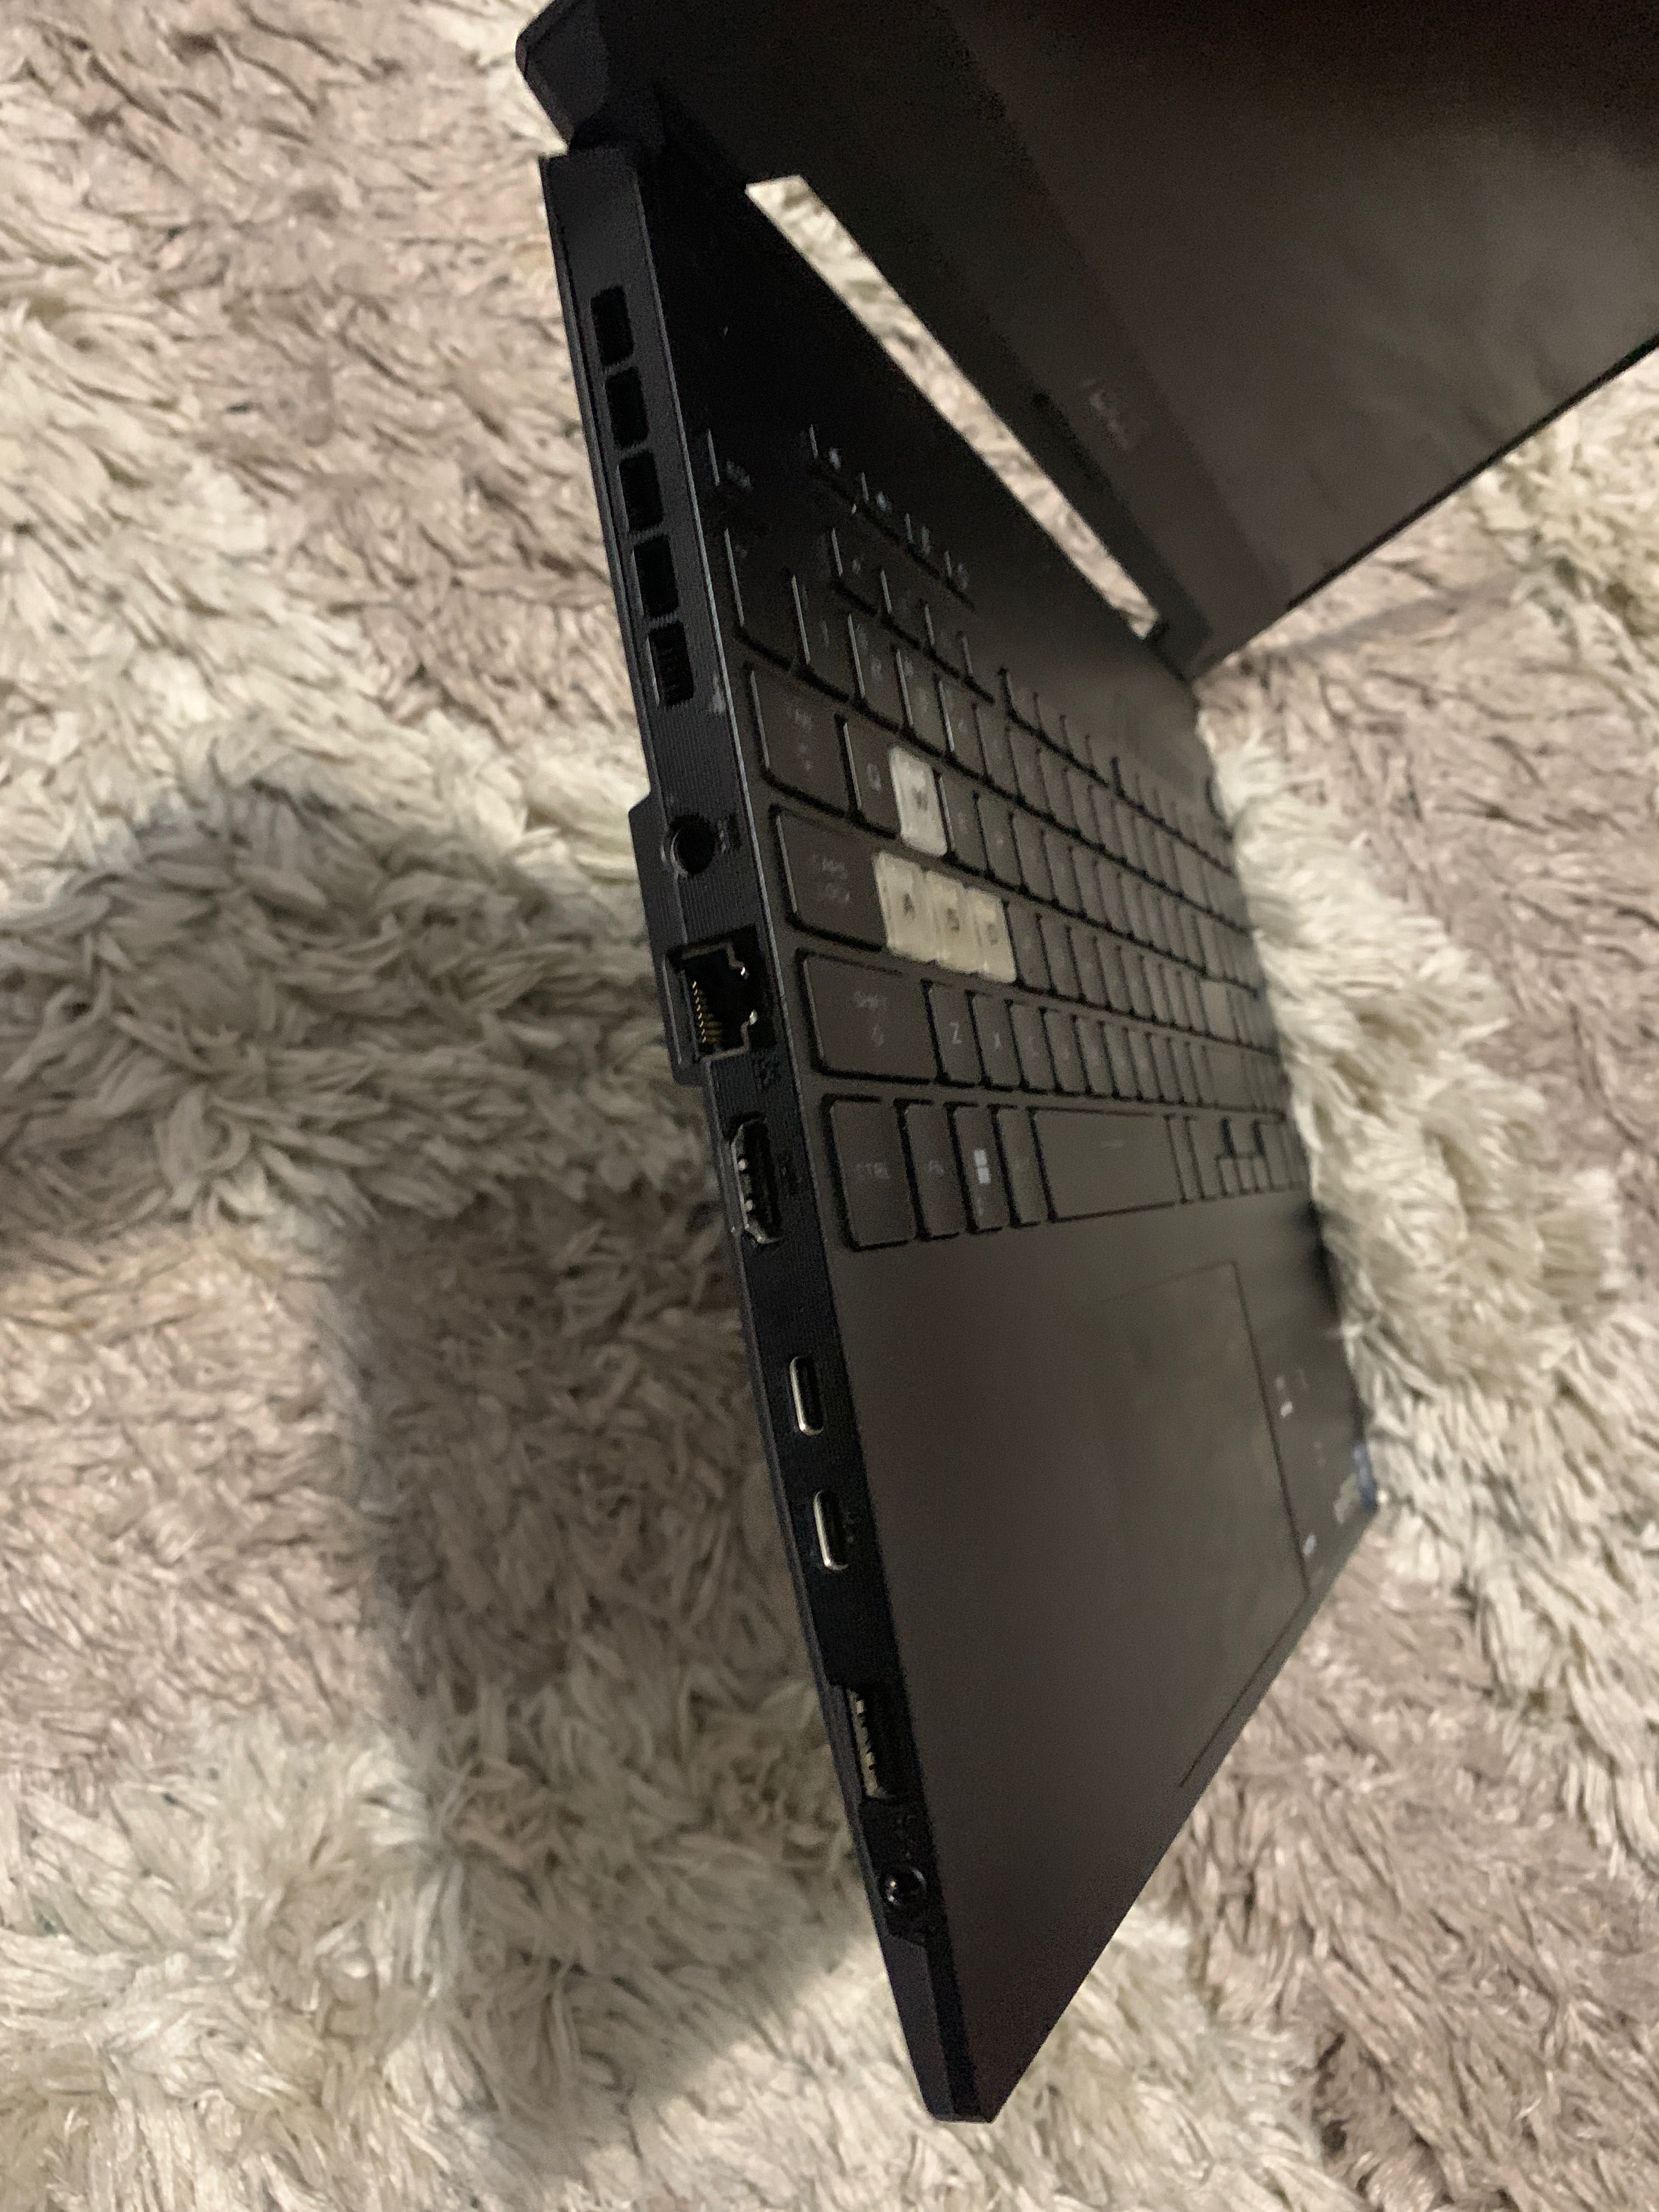 Vand laptop Asus tuf dash gaming defect